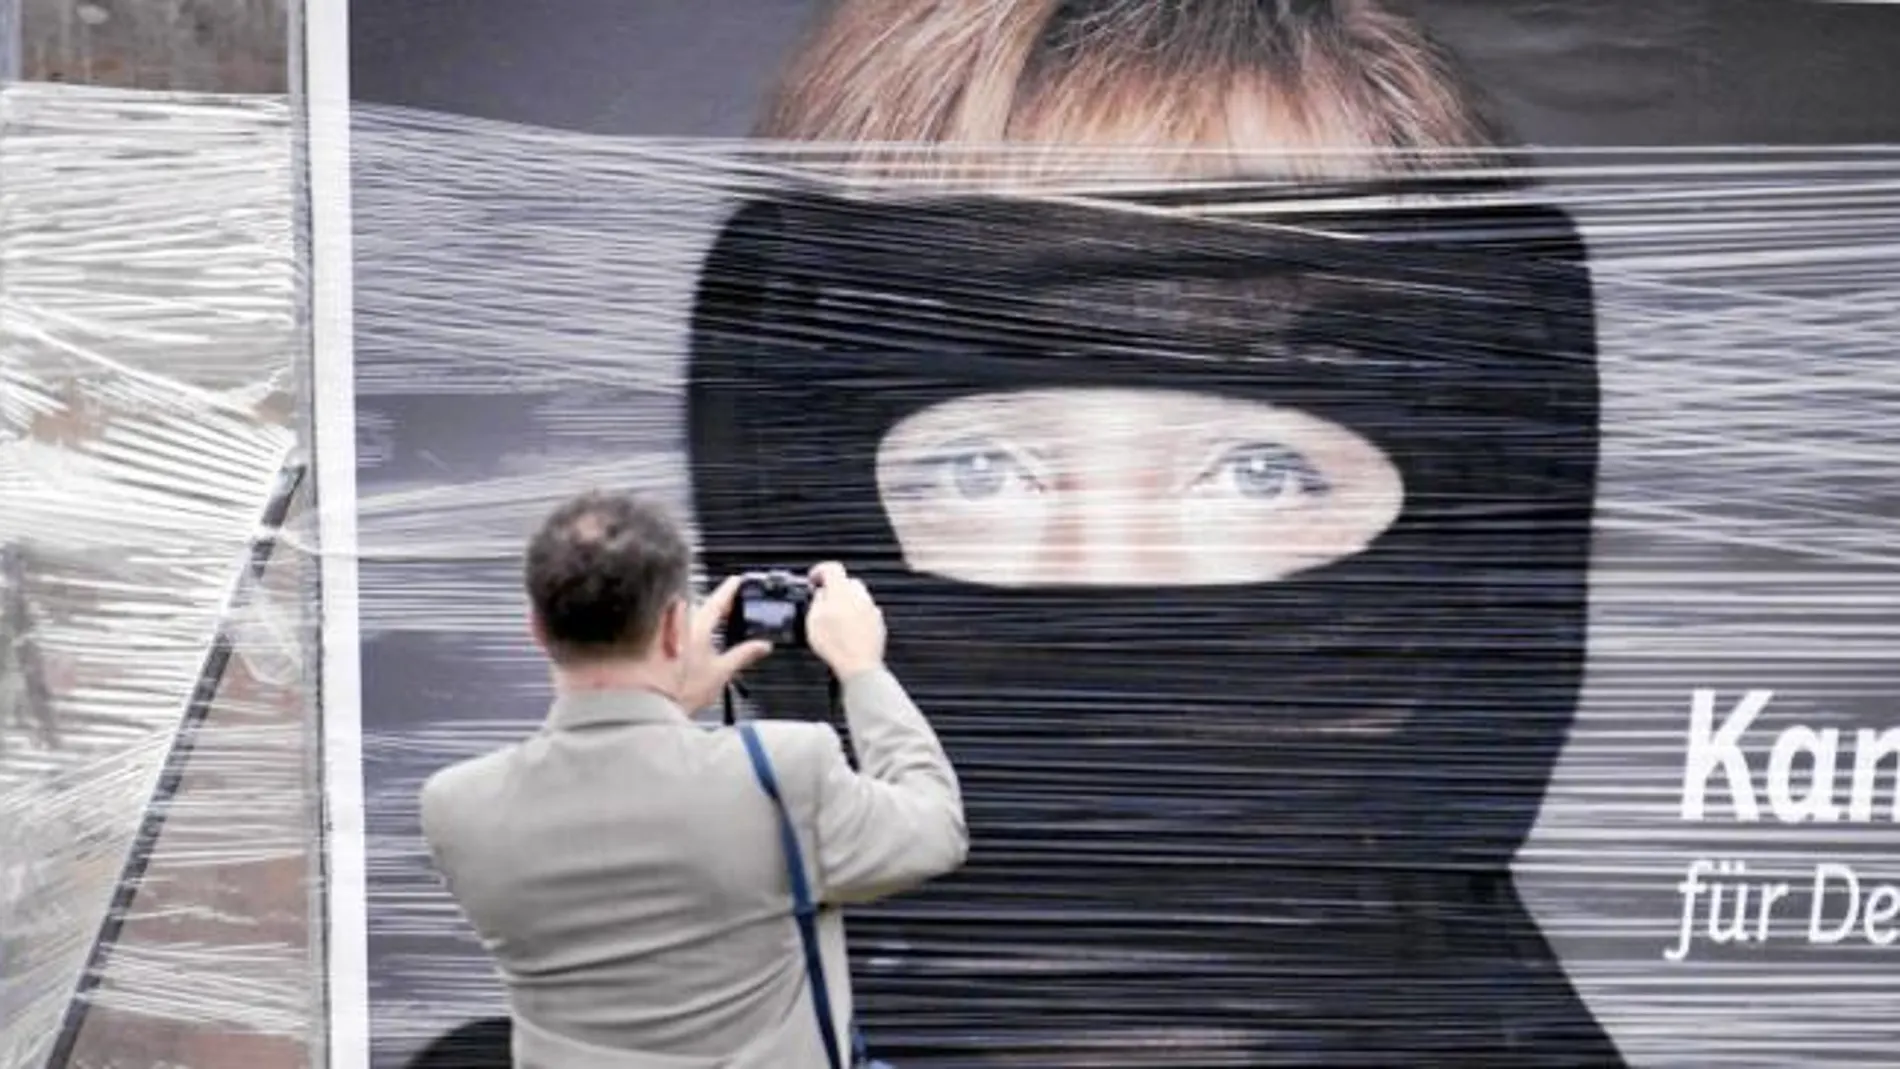 Un hombre hace una foto en Berlín a un cartel de Merkel saboteado con pintura negra